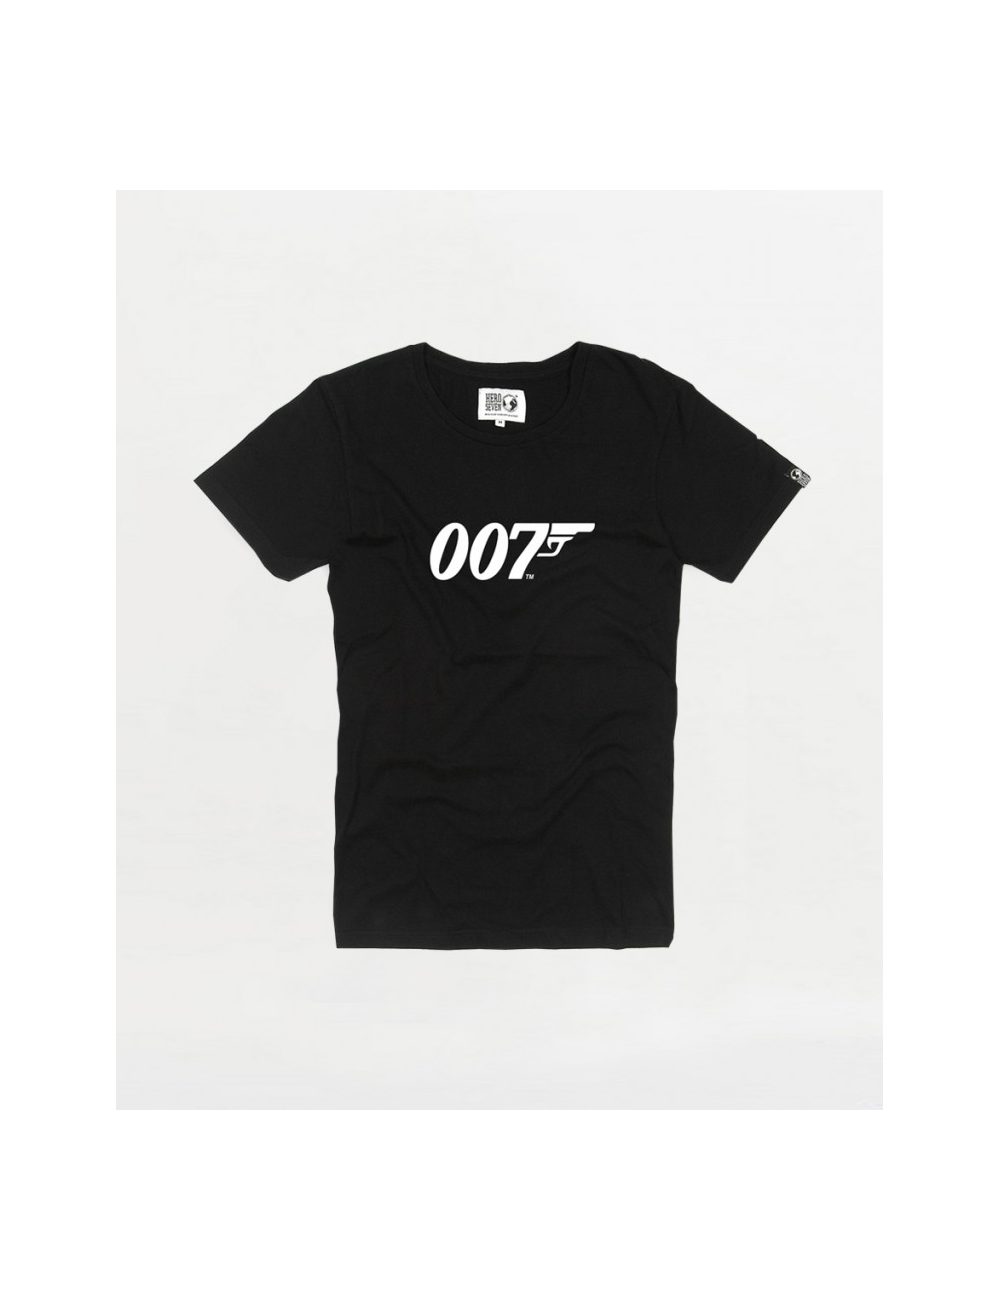 Tee Shirt Logo 007 kid 509